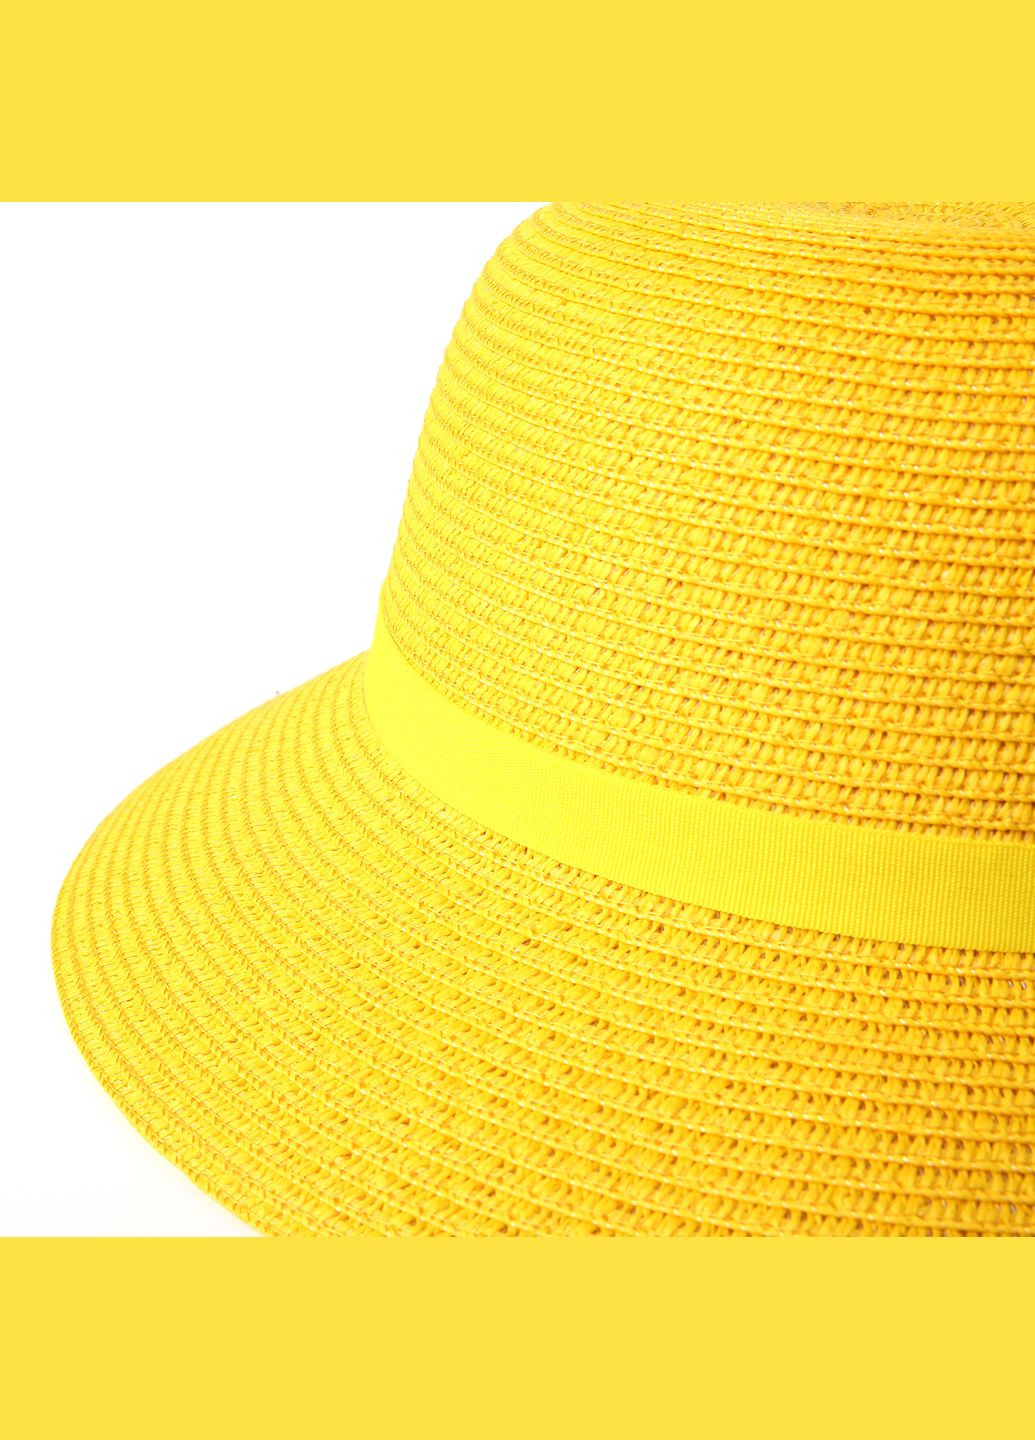 Шляпа со средними полями женская бумага желтая GABRIEL LuckyLOOK 818-010 (289478380)